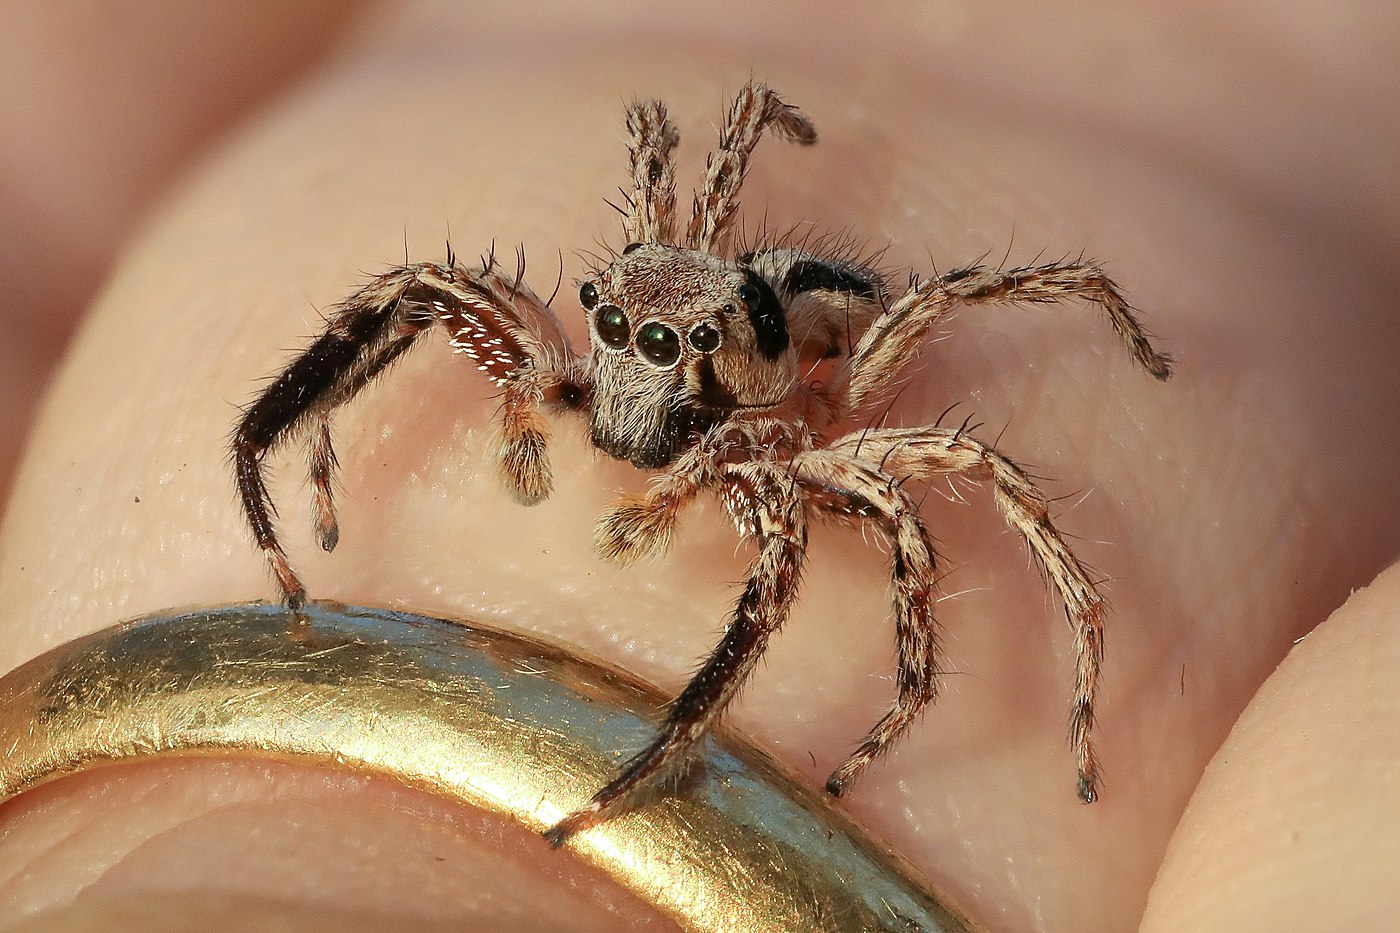 Plexippus petersi (araignée sauteuse), mâle, sur un doigt humain, Laos